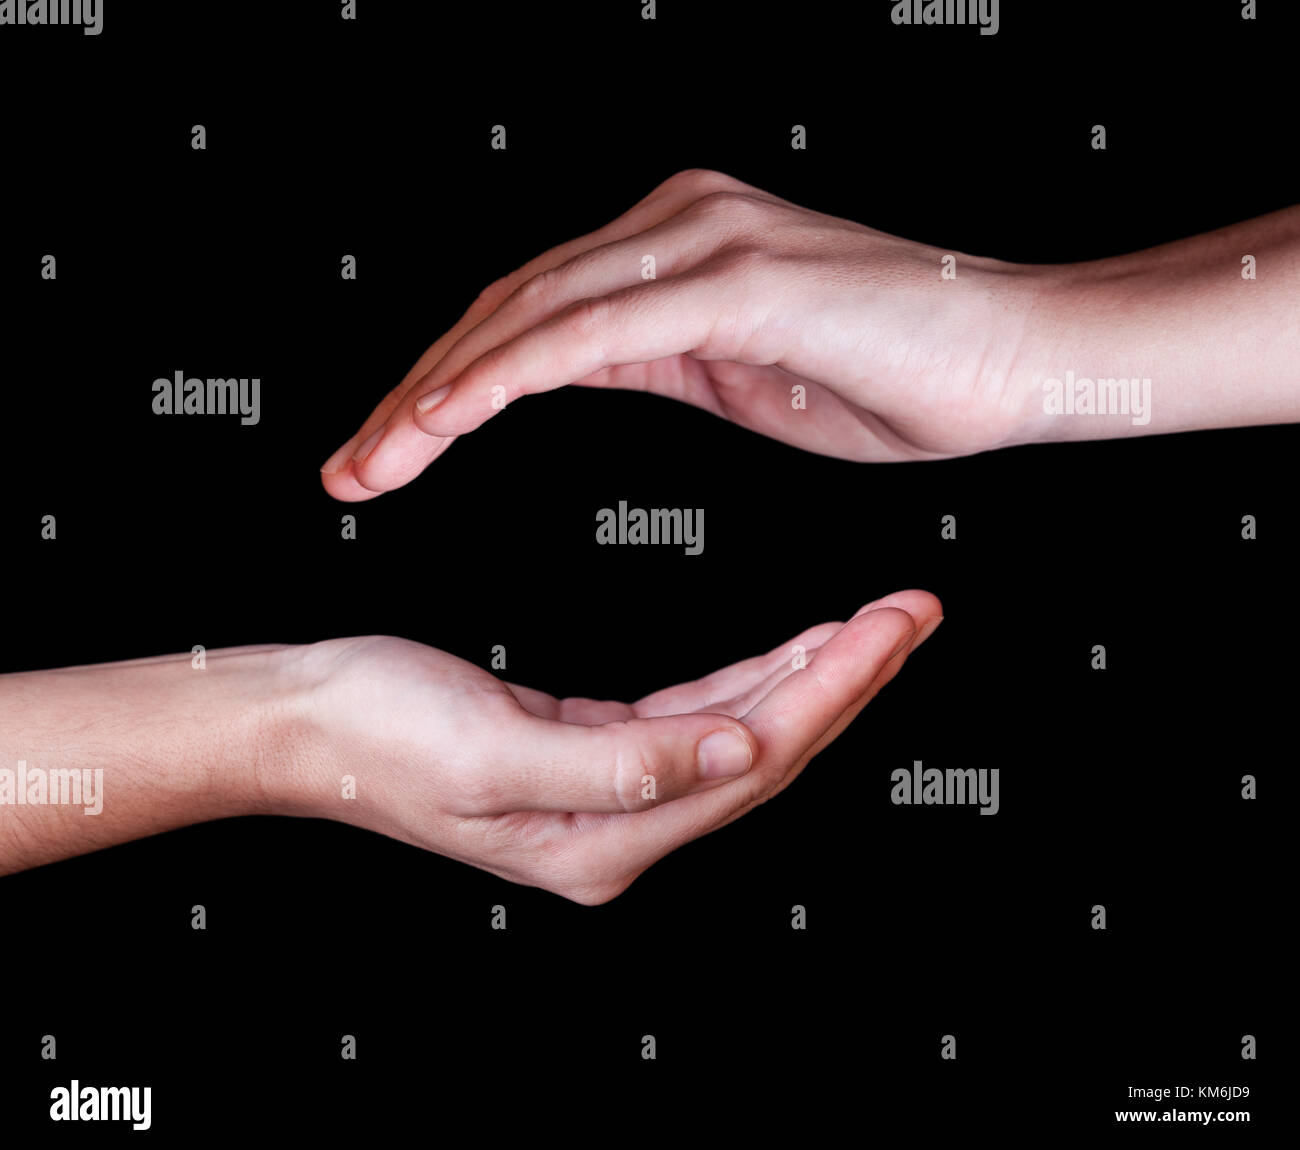 Frau oder weibliche Hände legte in einem Schutz, Schutz, Sicherheit oder sicheres Konzept Symbol. schwarzer Hintergrund mit Kopie Raum Linke und rechte Hand Stockfoto